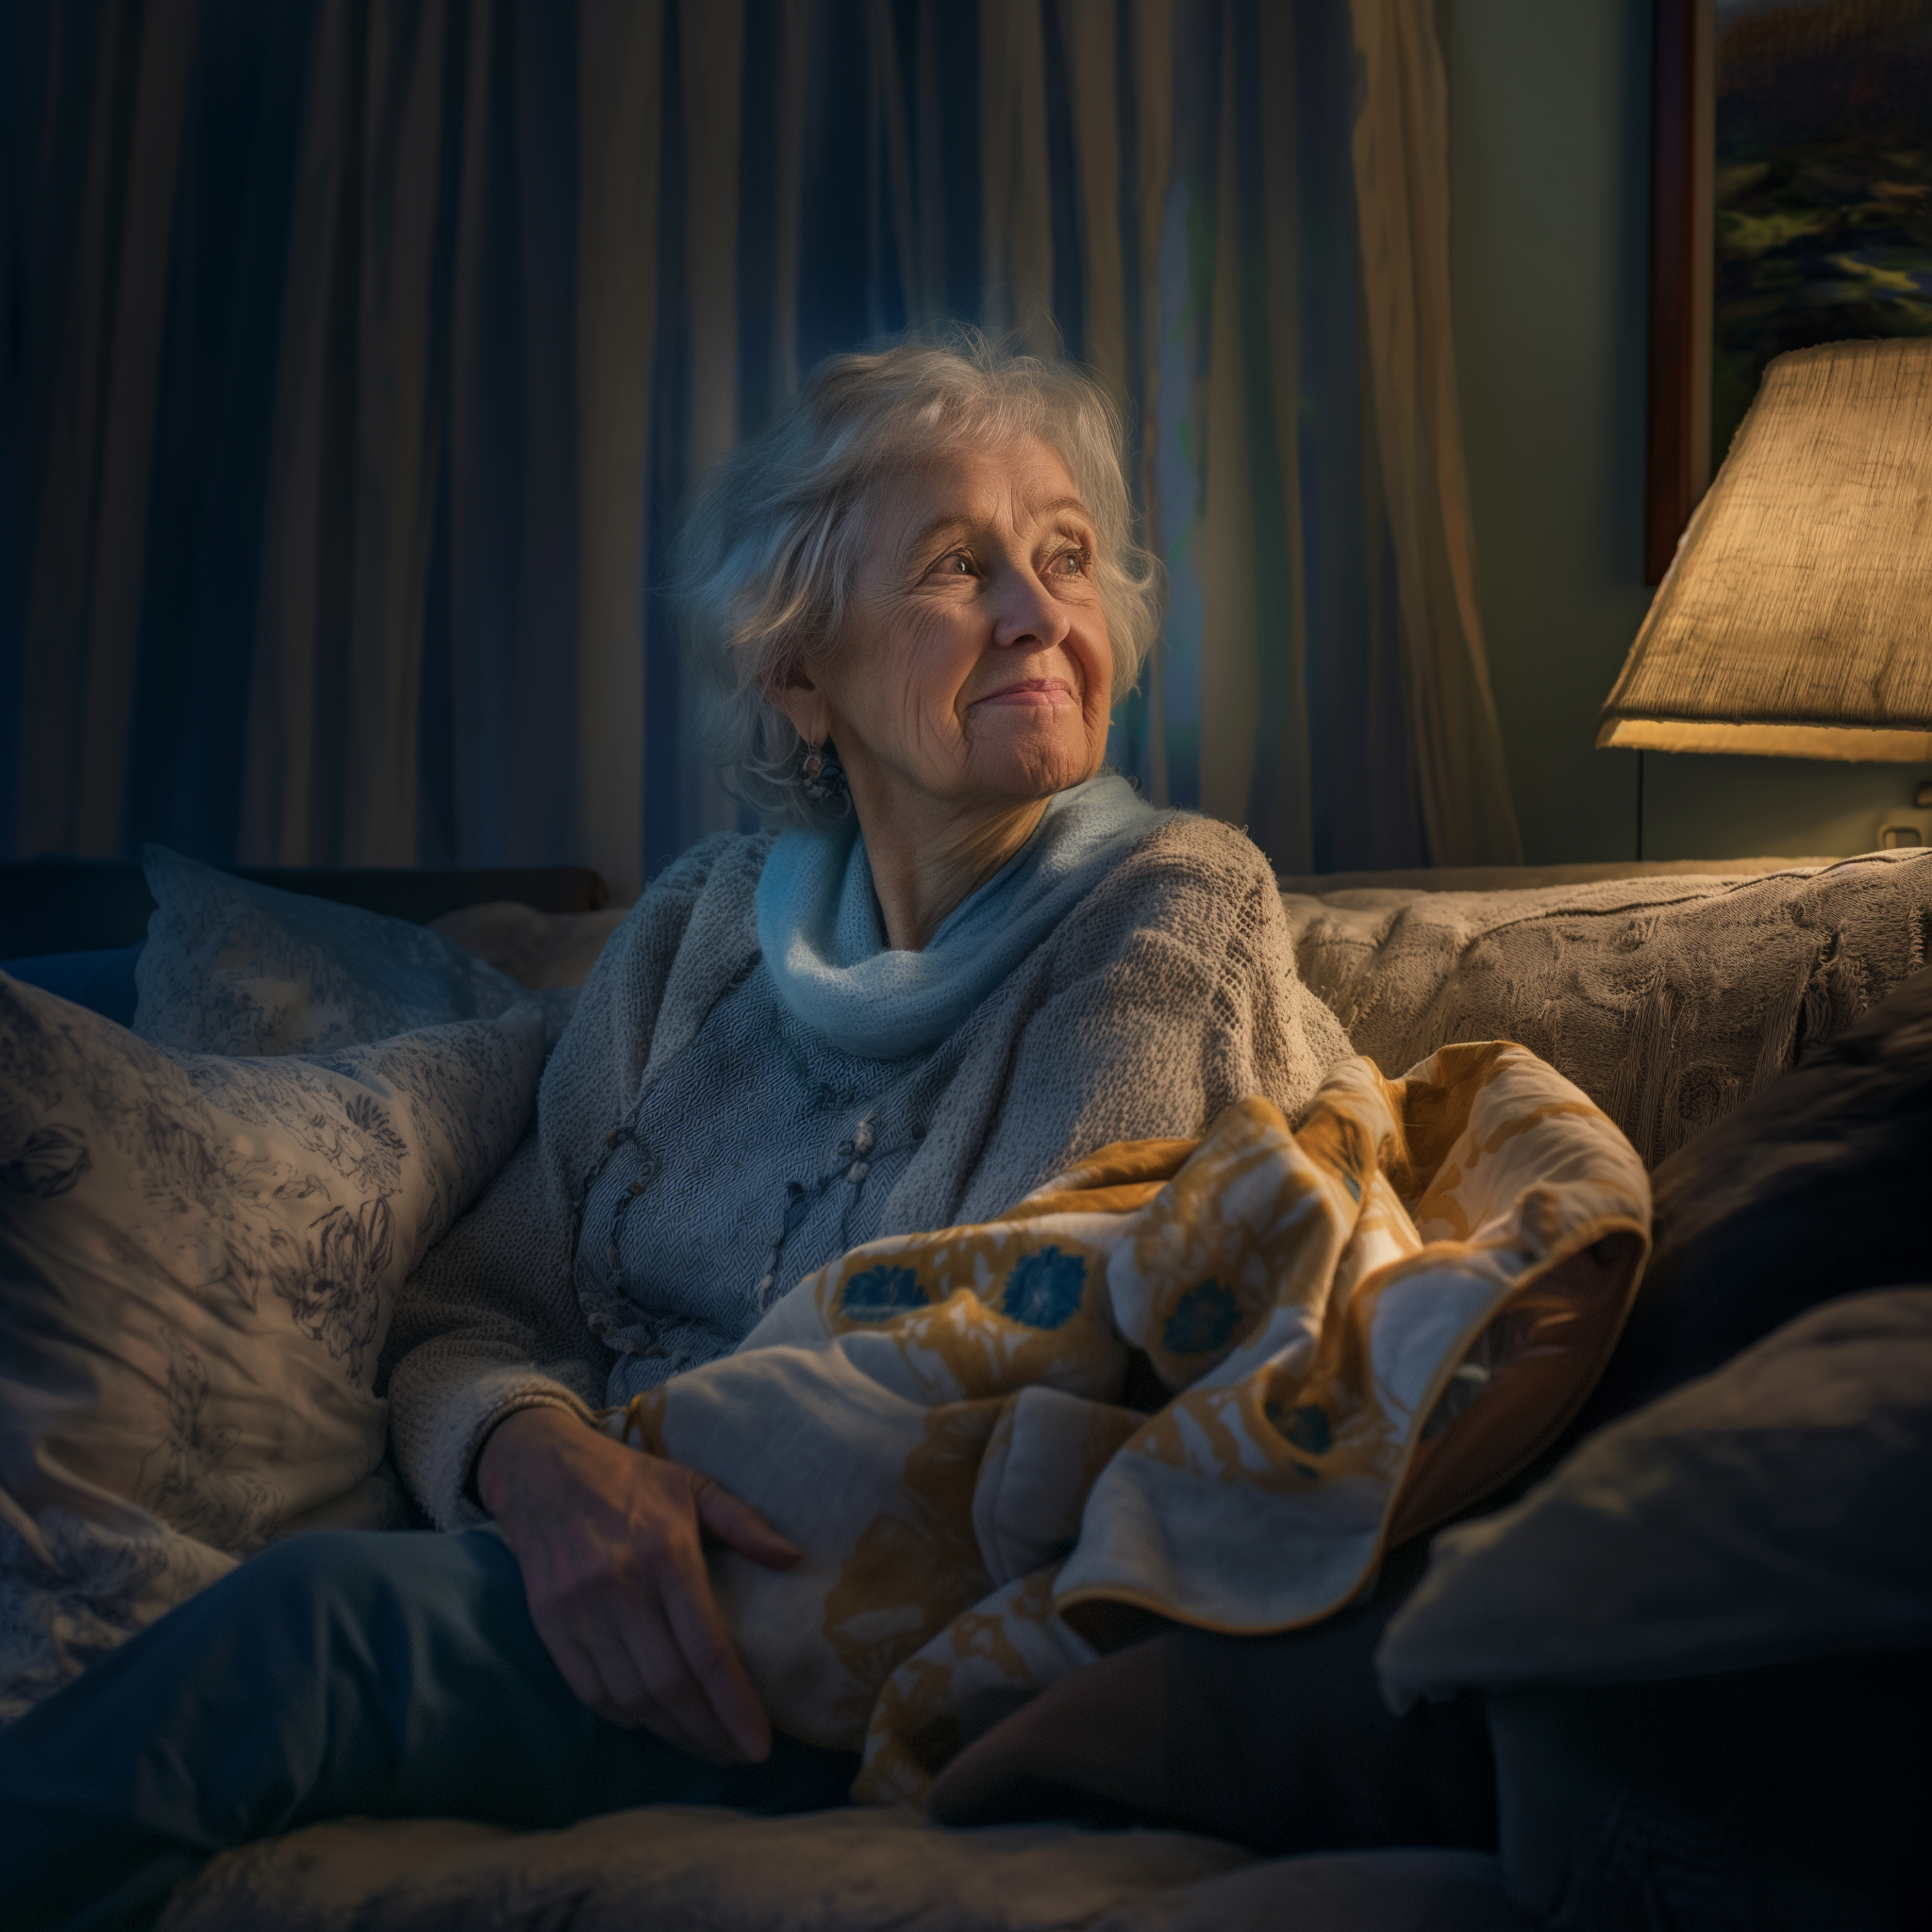 Une grand-mère sourit alors qu'elle est assise sur un canapé la nuit | Source : Midjourney